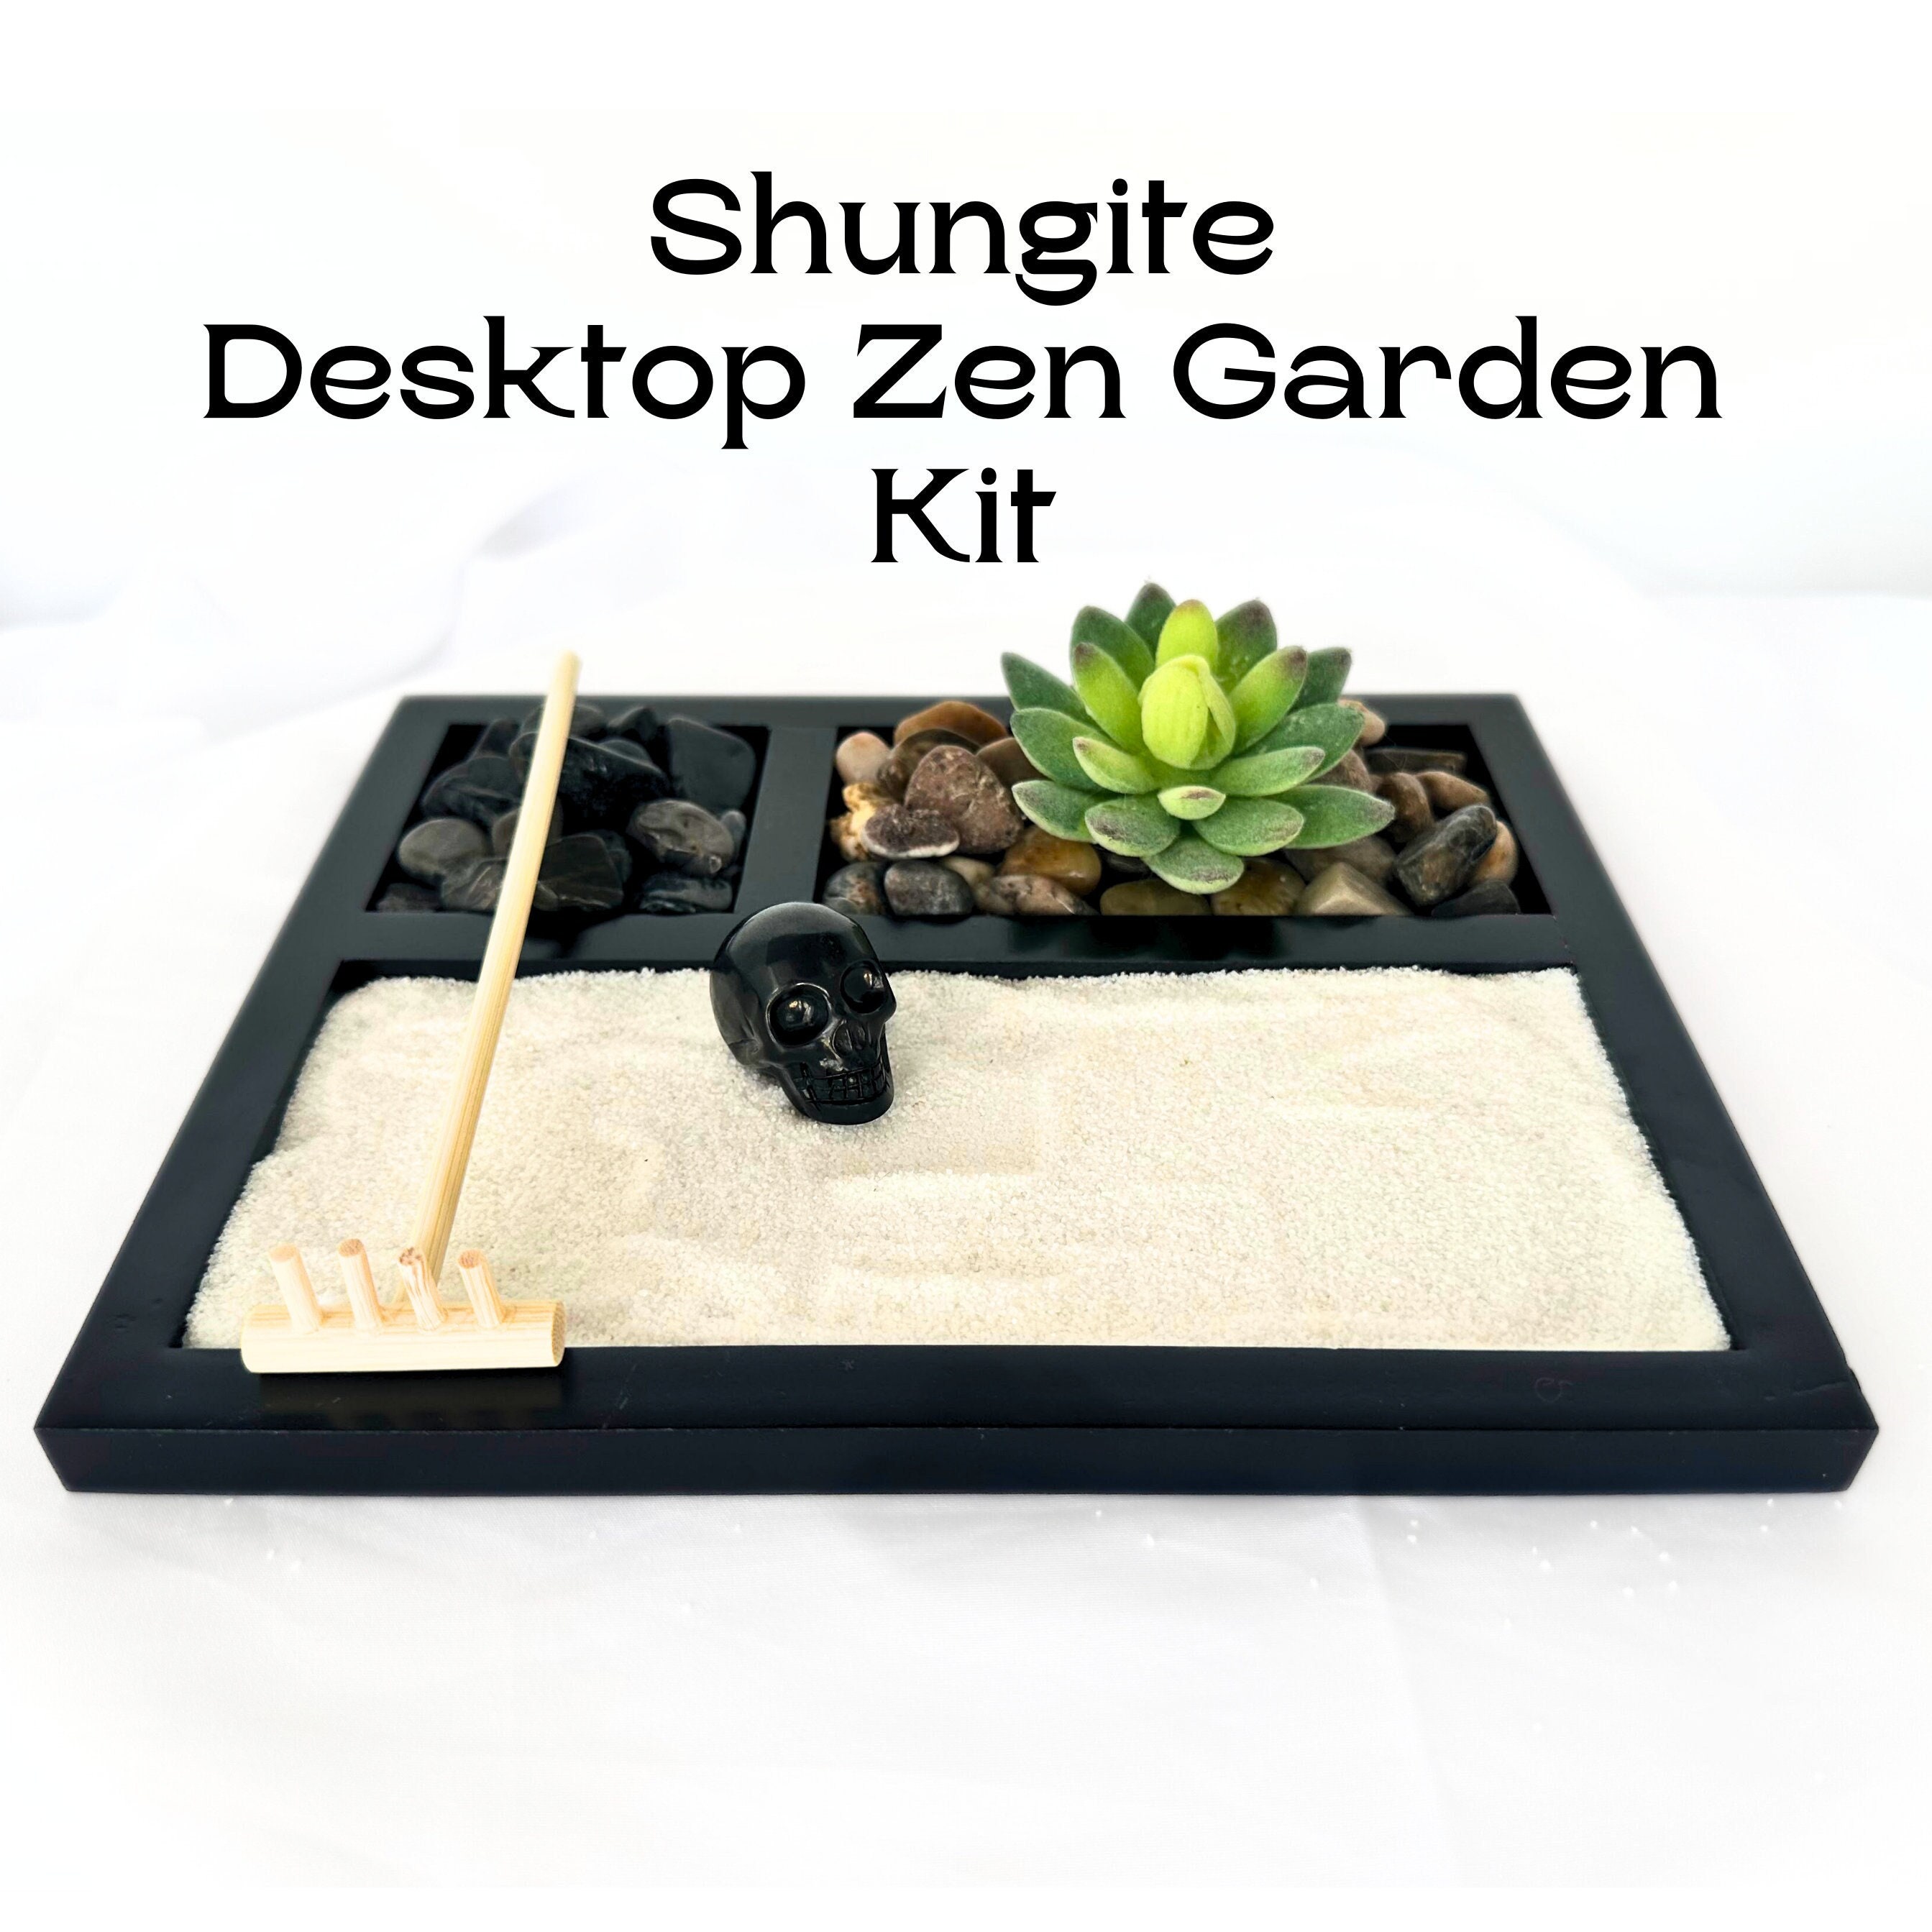 Zen Garden kit for Desk, Ensosensory Sand Tray Therapy Kit, Zen